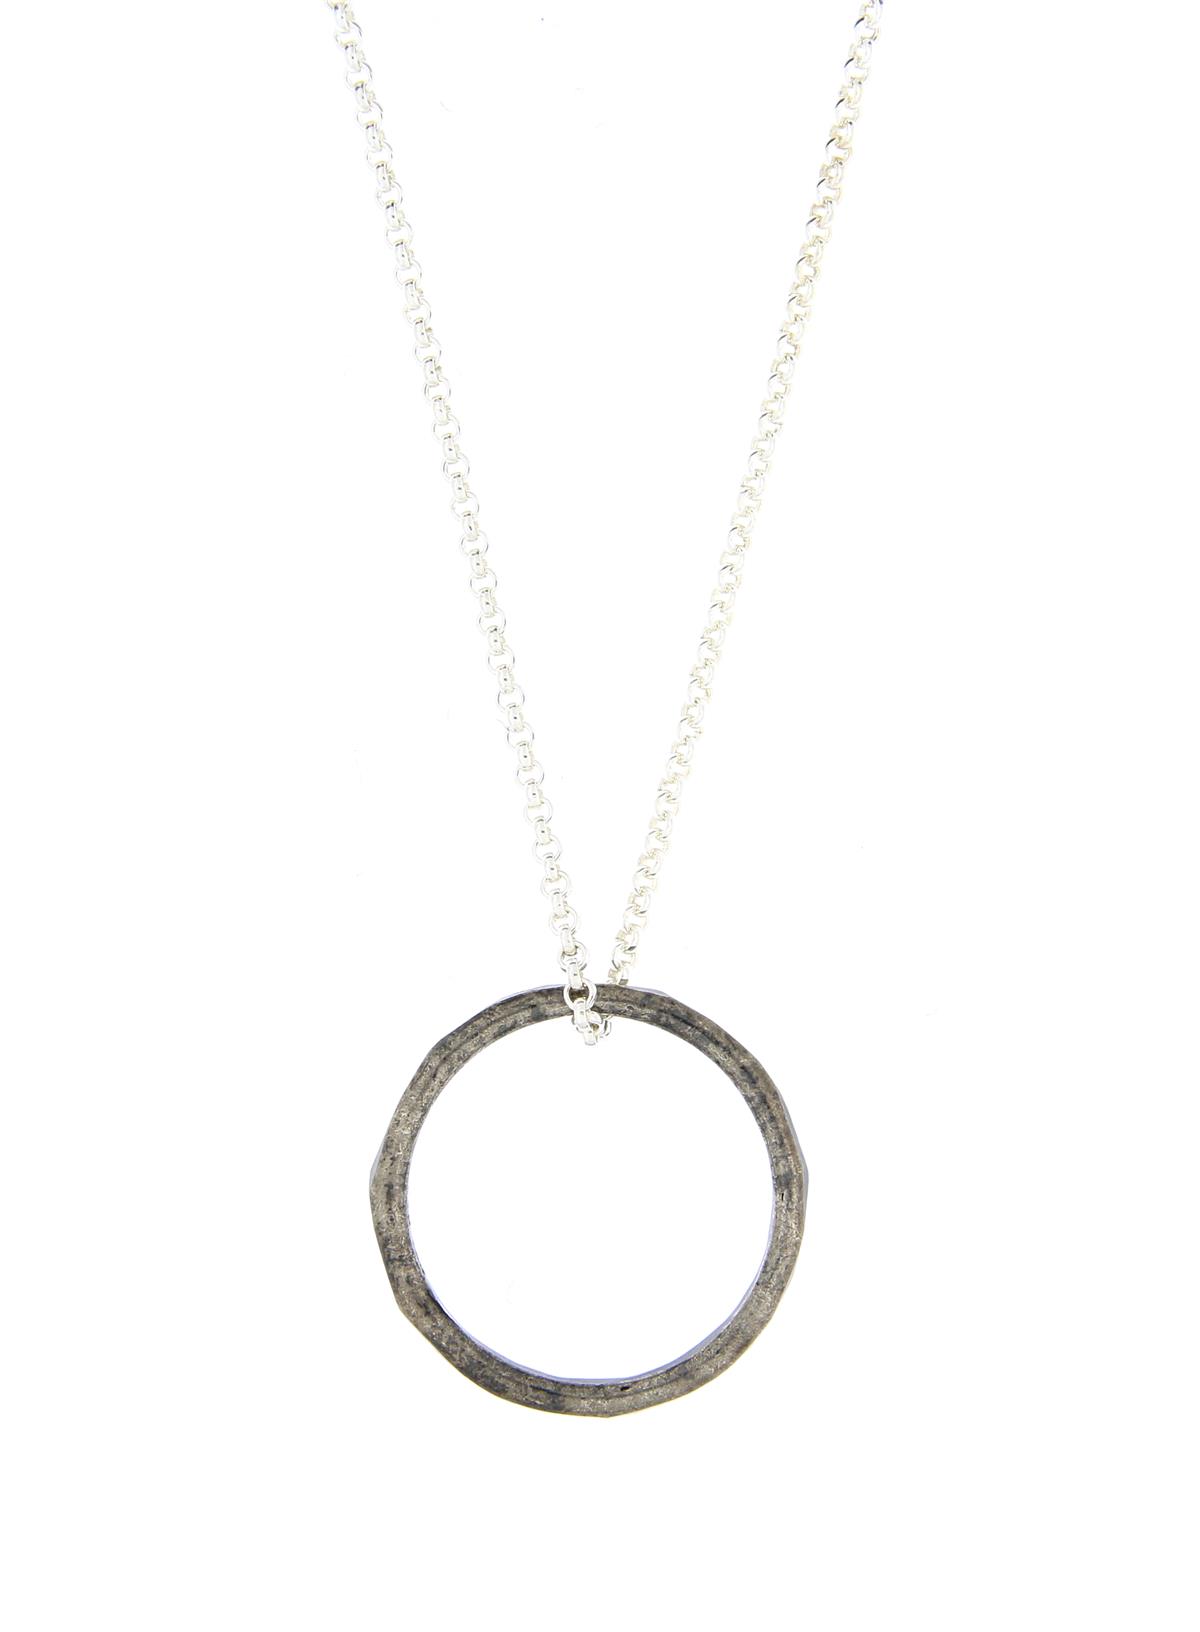 Katie g. Jewellery - Knuckle Ring - sterling silber oxidiert - auf silberner Ankerkette - Ring um 40€ und Kette ab 20€ je nach Model